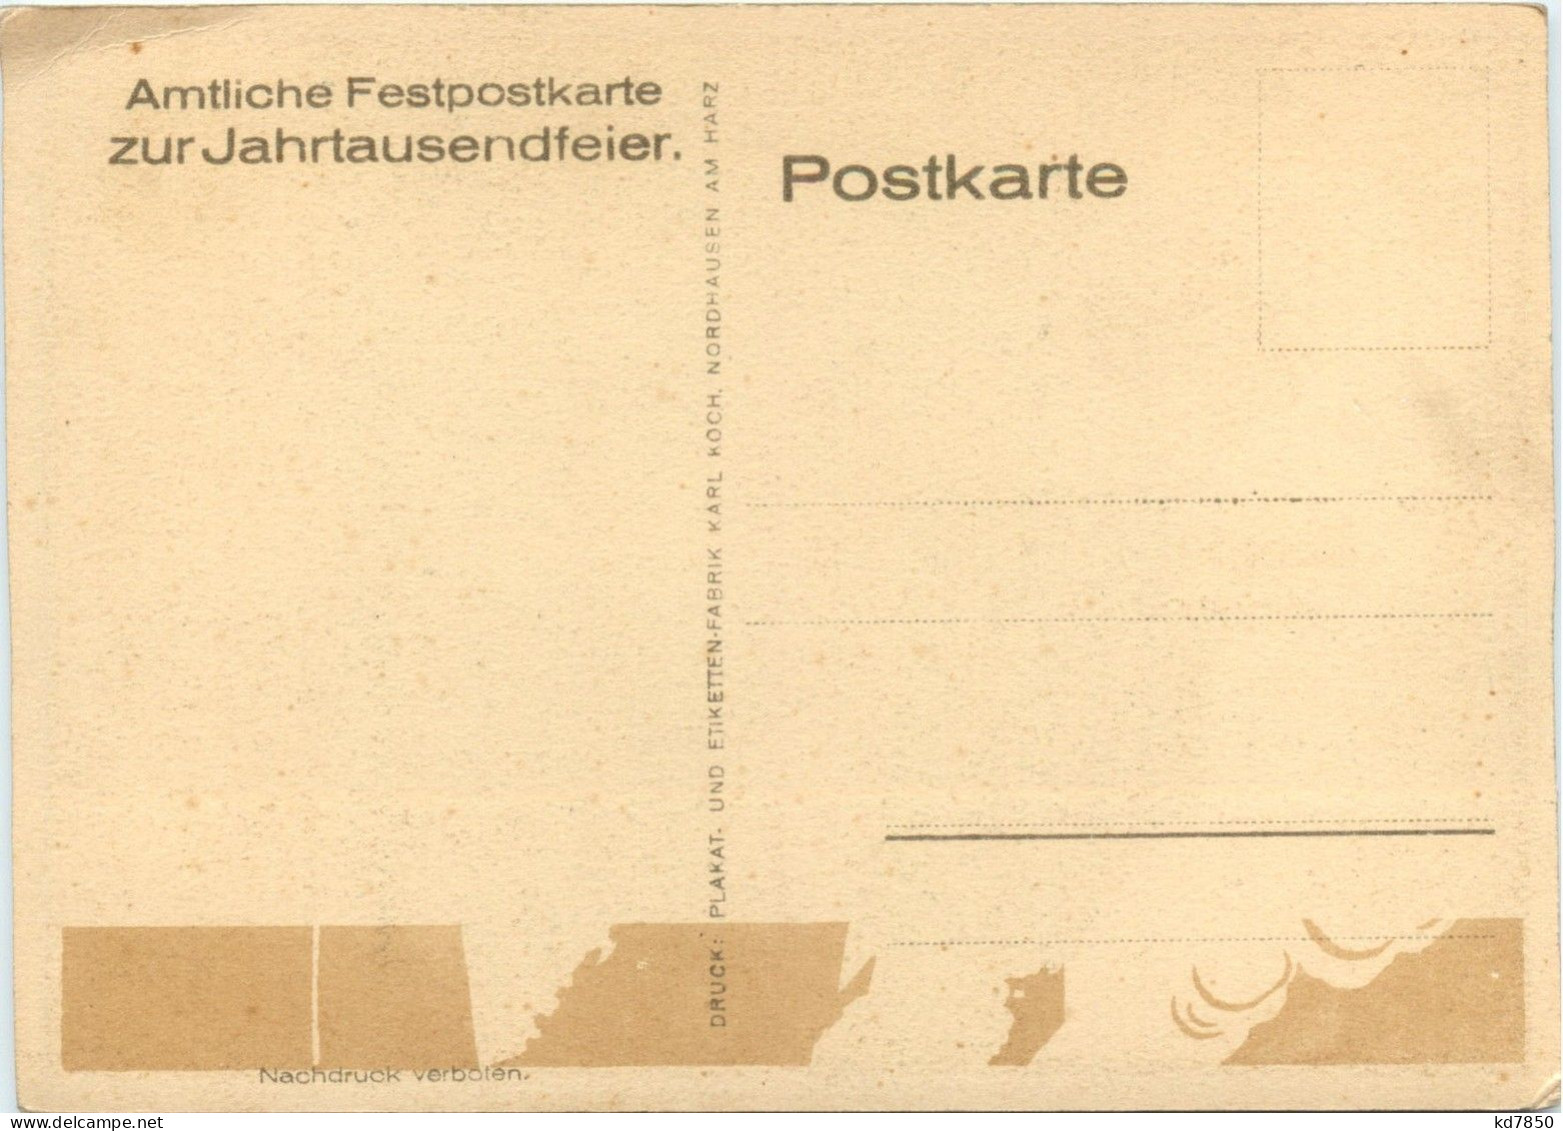 Nordhausen - Amtliche Festpostkarte Zur Jahrtausendfeier - Nordhausen